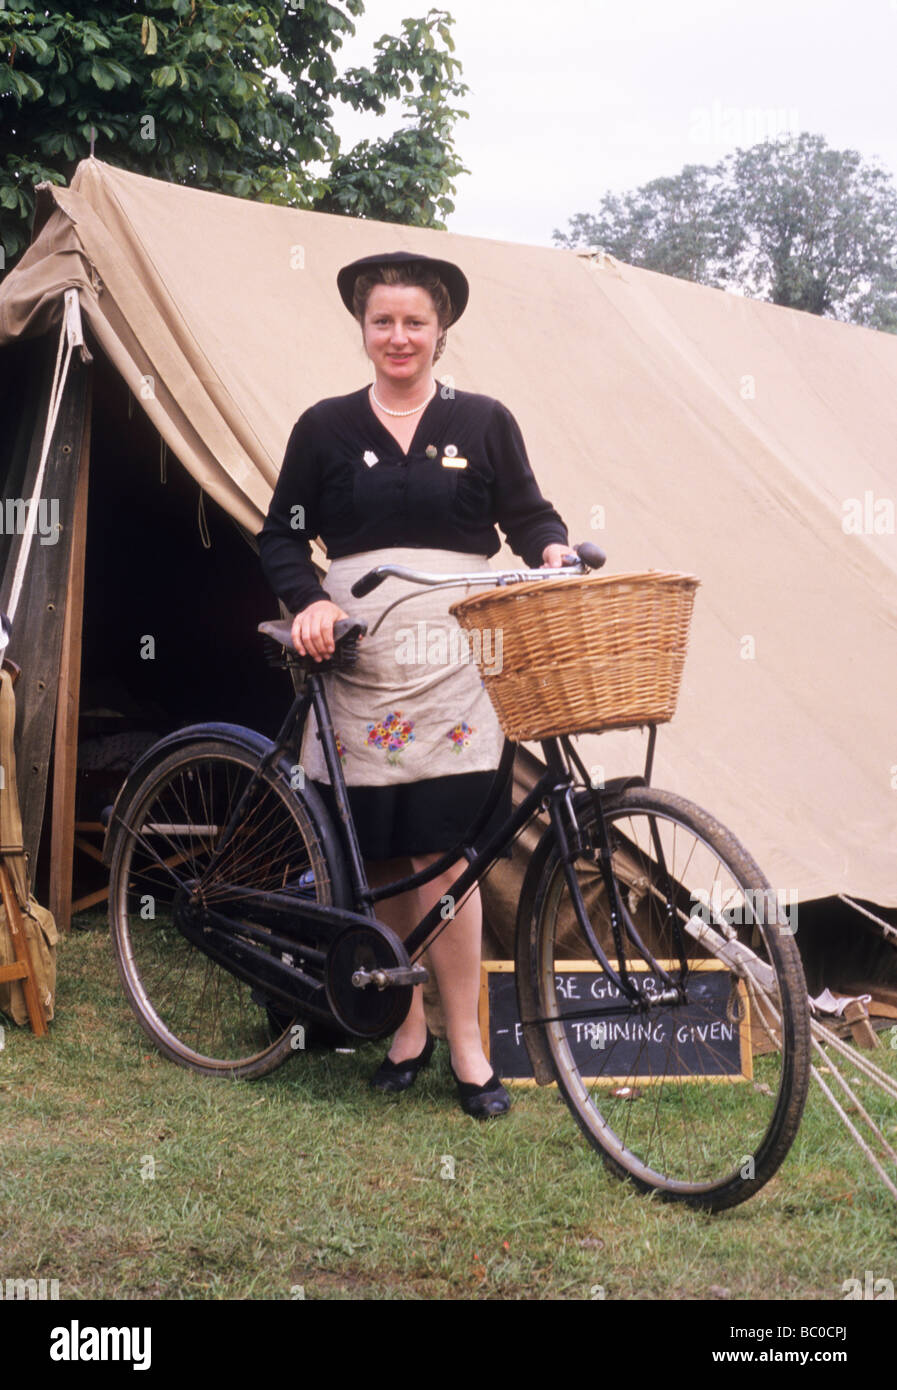 Seconde Guerre mondiale reconstitution dame femme landgirl femme civile WVS ATS Location tente vélo fille terre Anglais britannique Banque D'Images